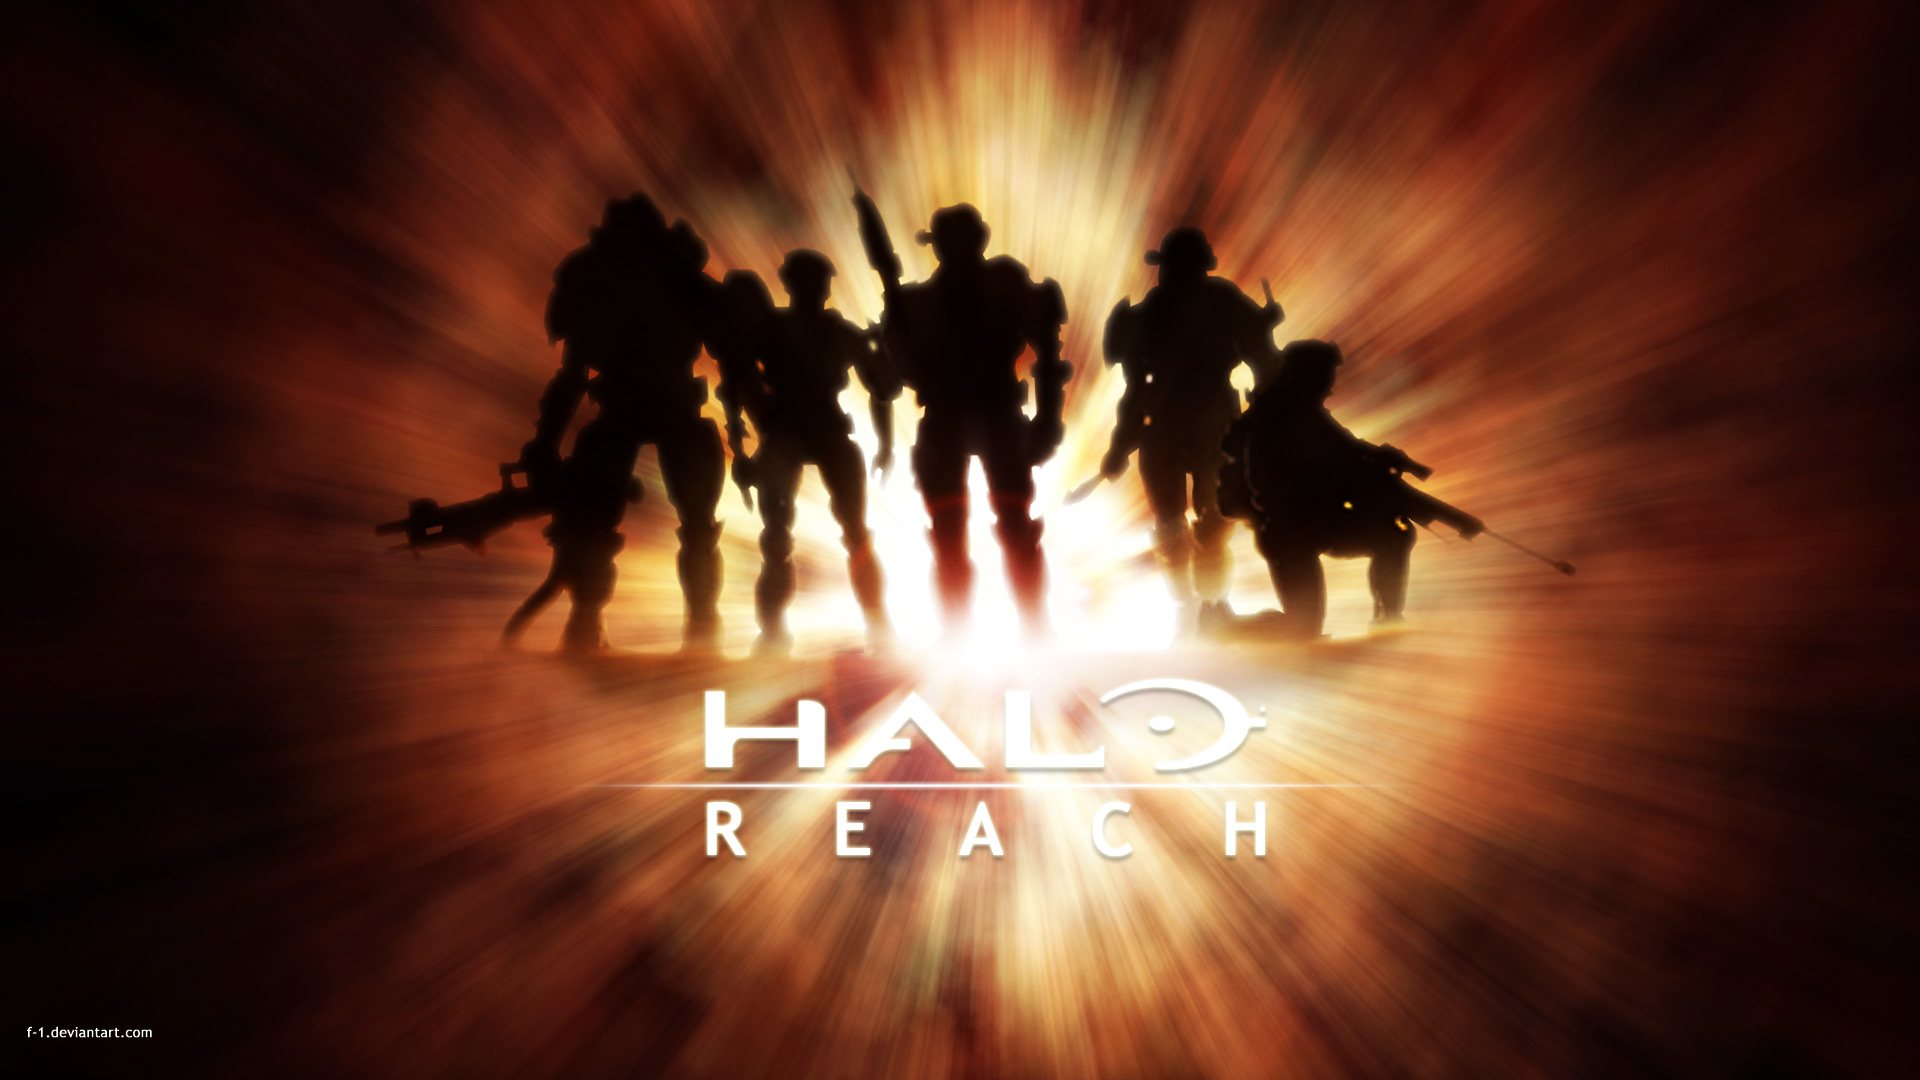 Halo Reach 1080p Wallpaper Halo Reach 720p Wallpaper